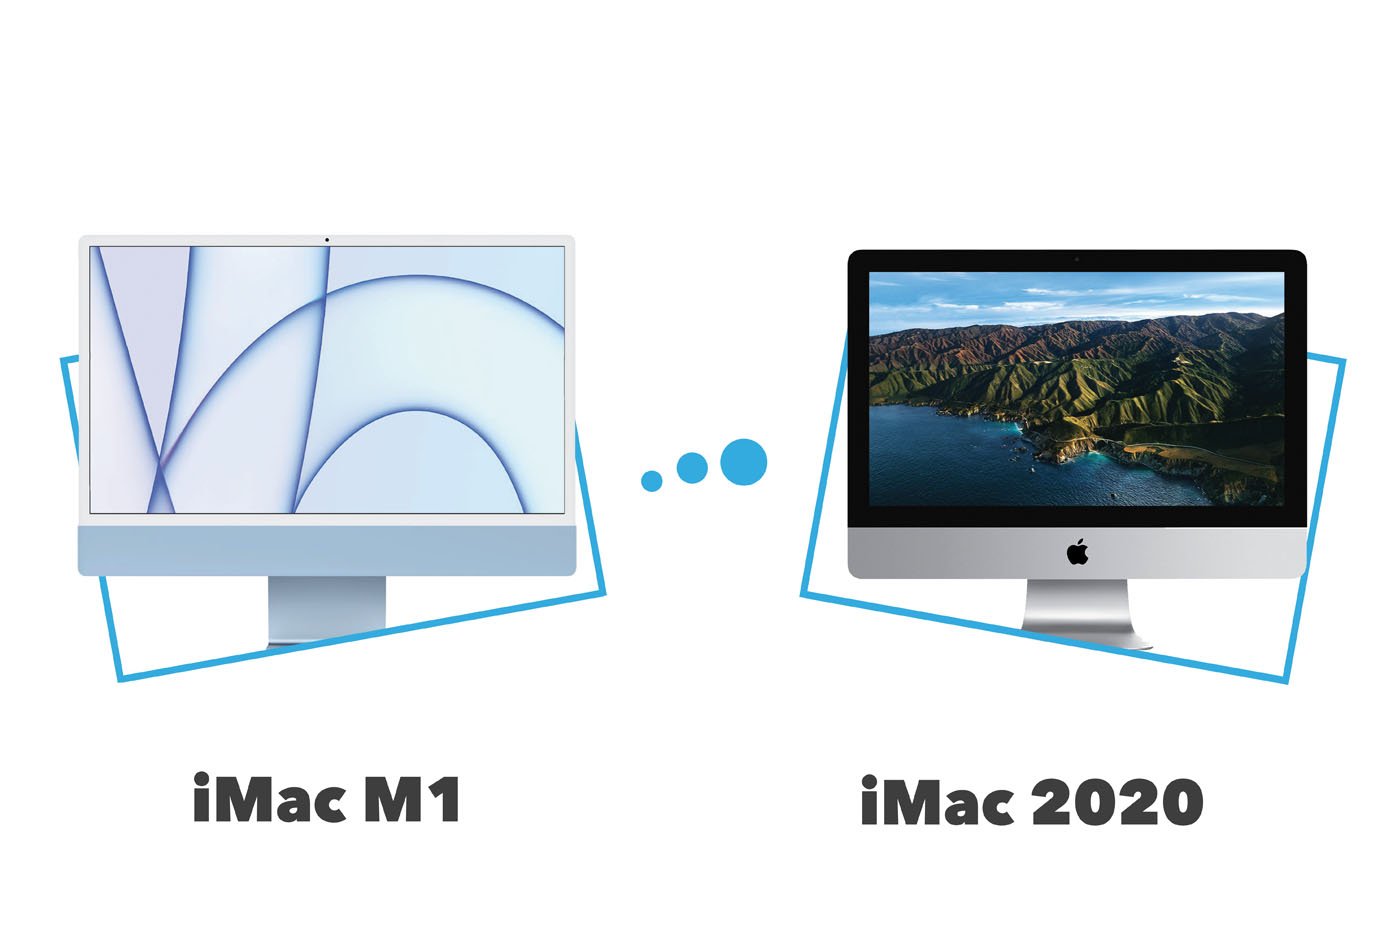 différences iMac M1 vs iMac 2020